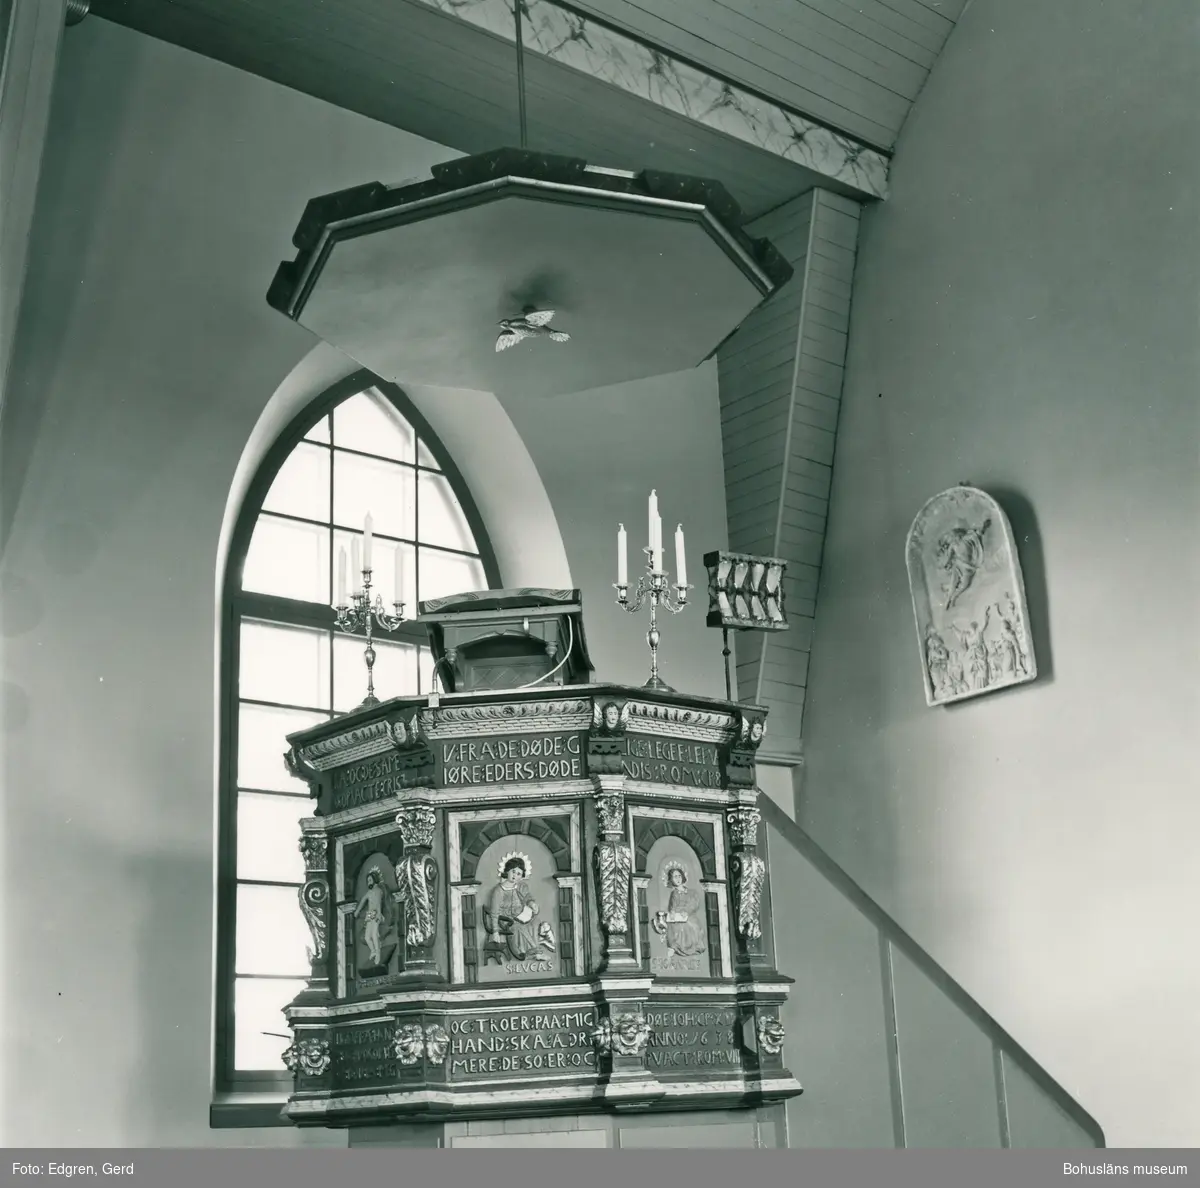 Text till bilden: "Tegneby kyrka. Predikstol från 1600-talet. Hårt restaurerad. Till höger i bilden gipsrelief gjord 1890 av Carl Johan Dyfverman för altaruppsatsen".